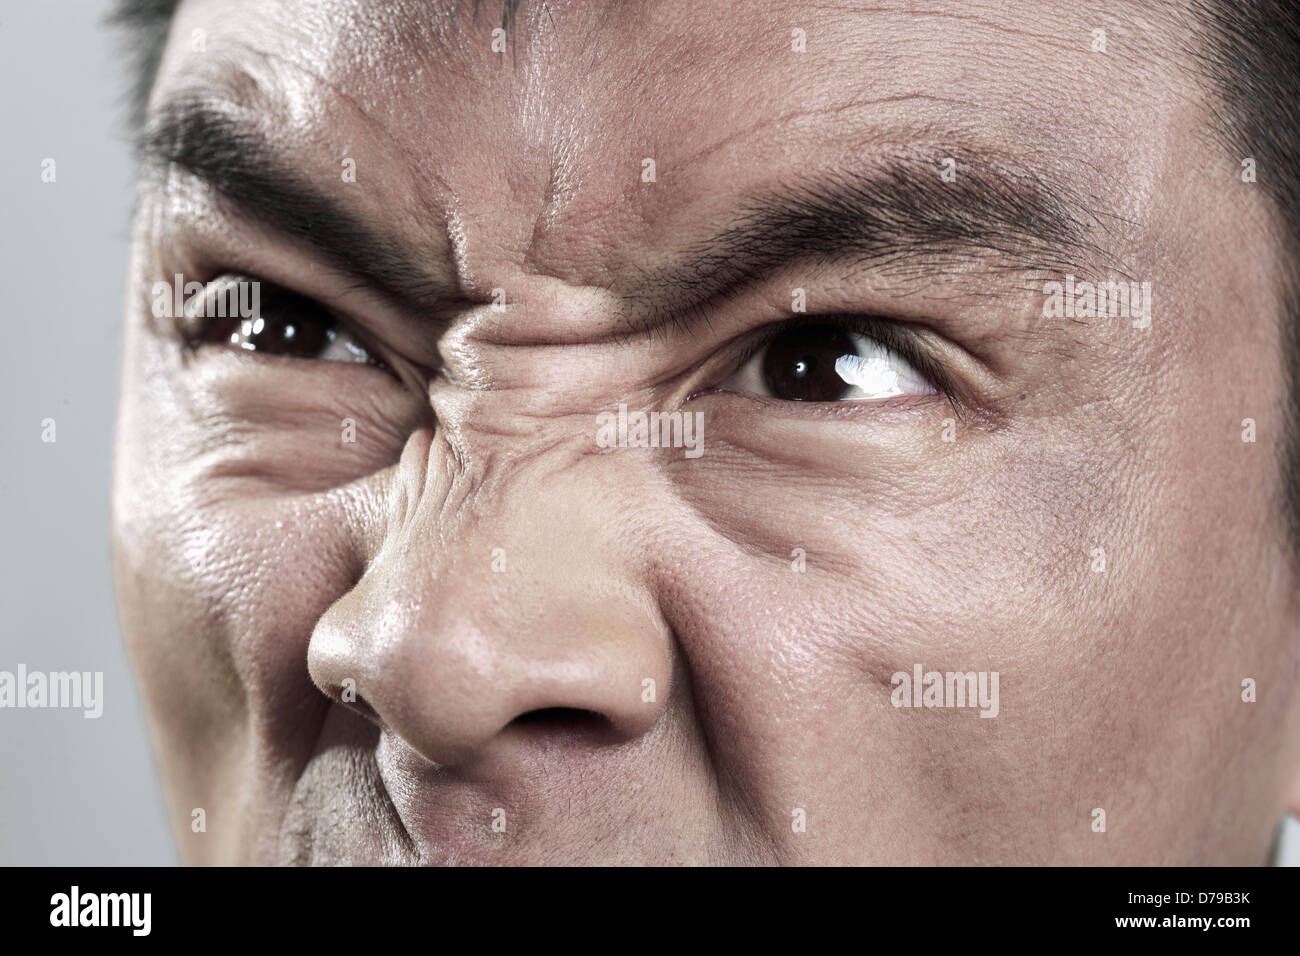 Extreme Nähe mans bis auf böse Gesicht Stockfotografie - Alamy